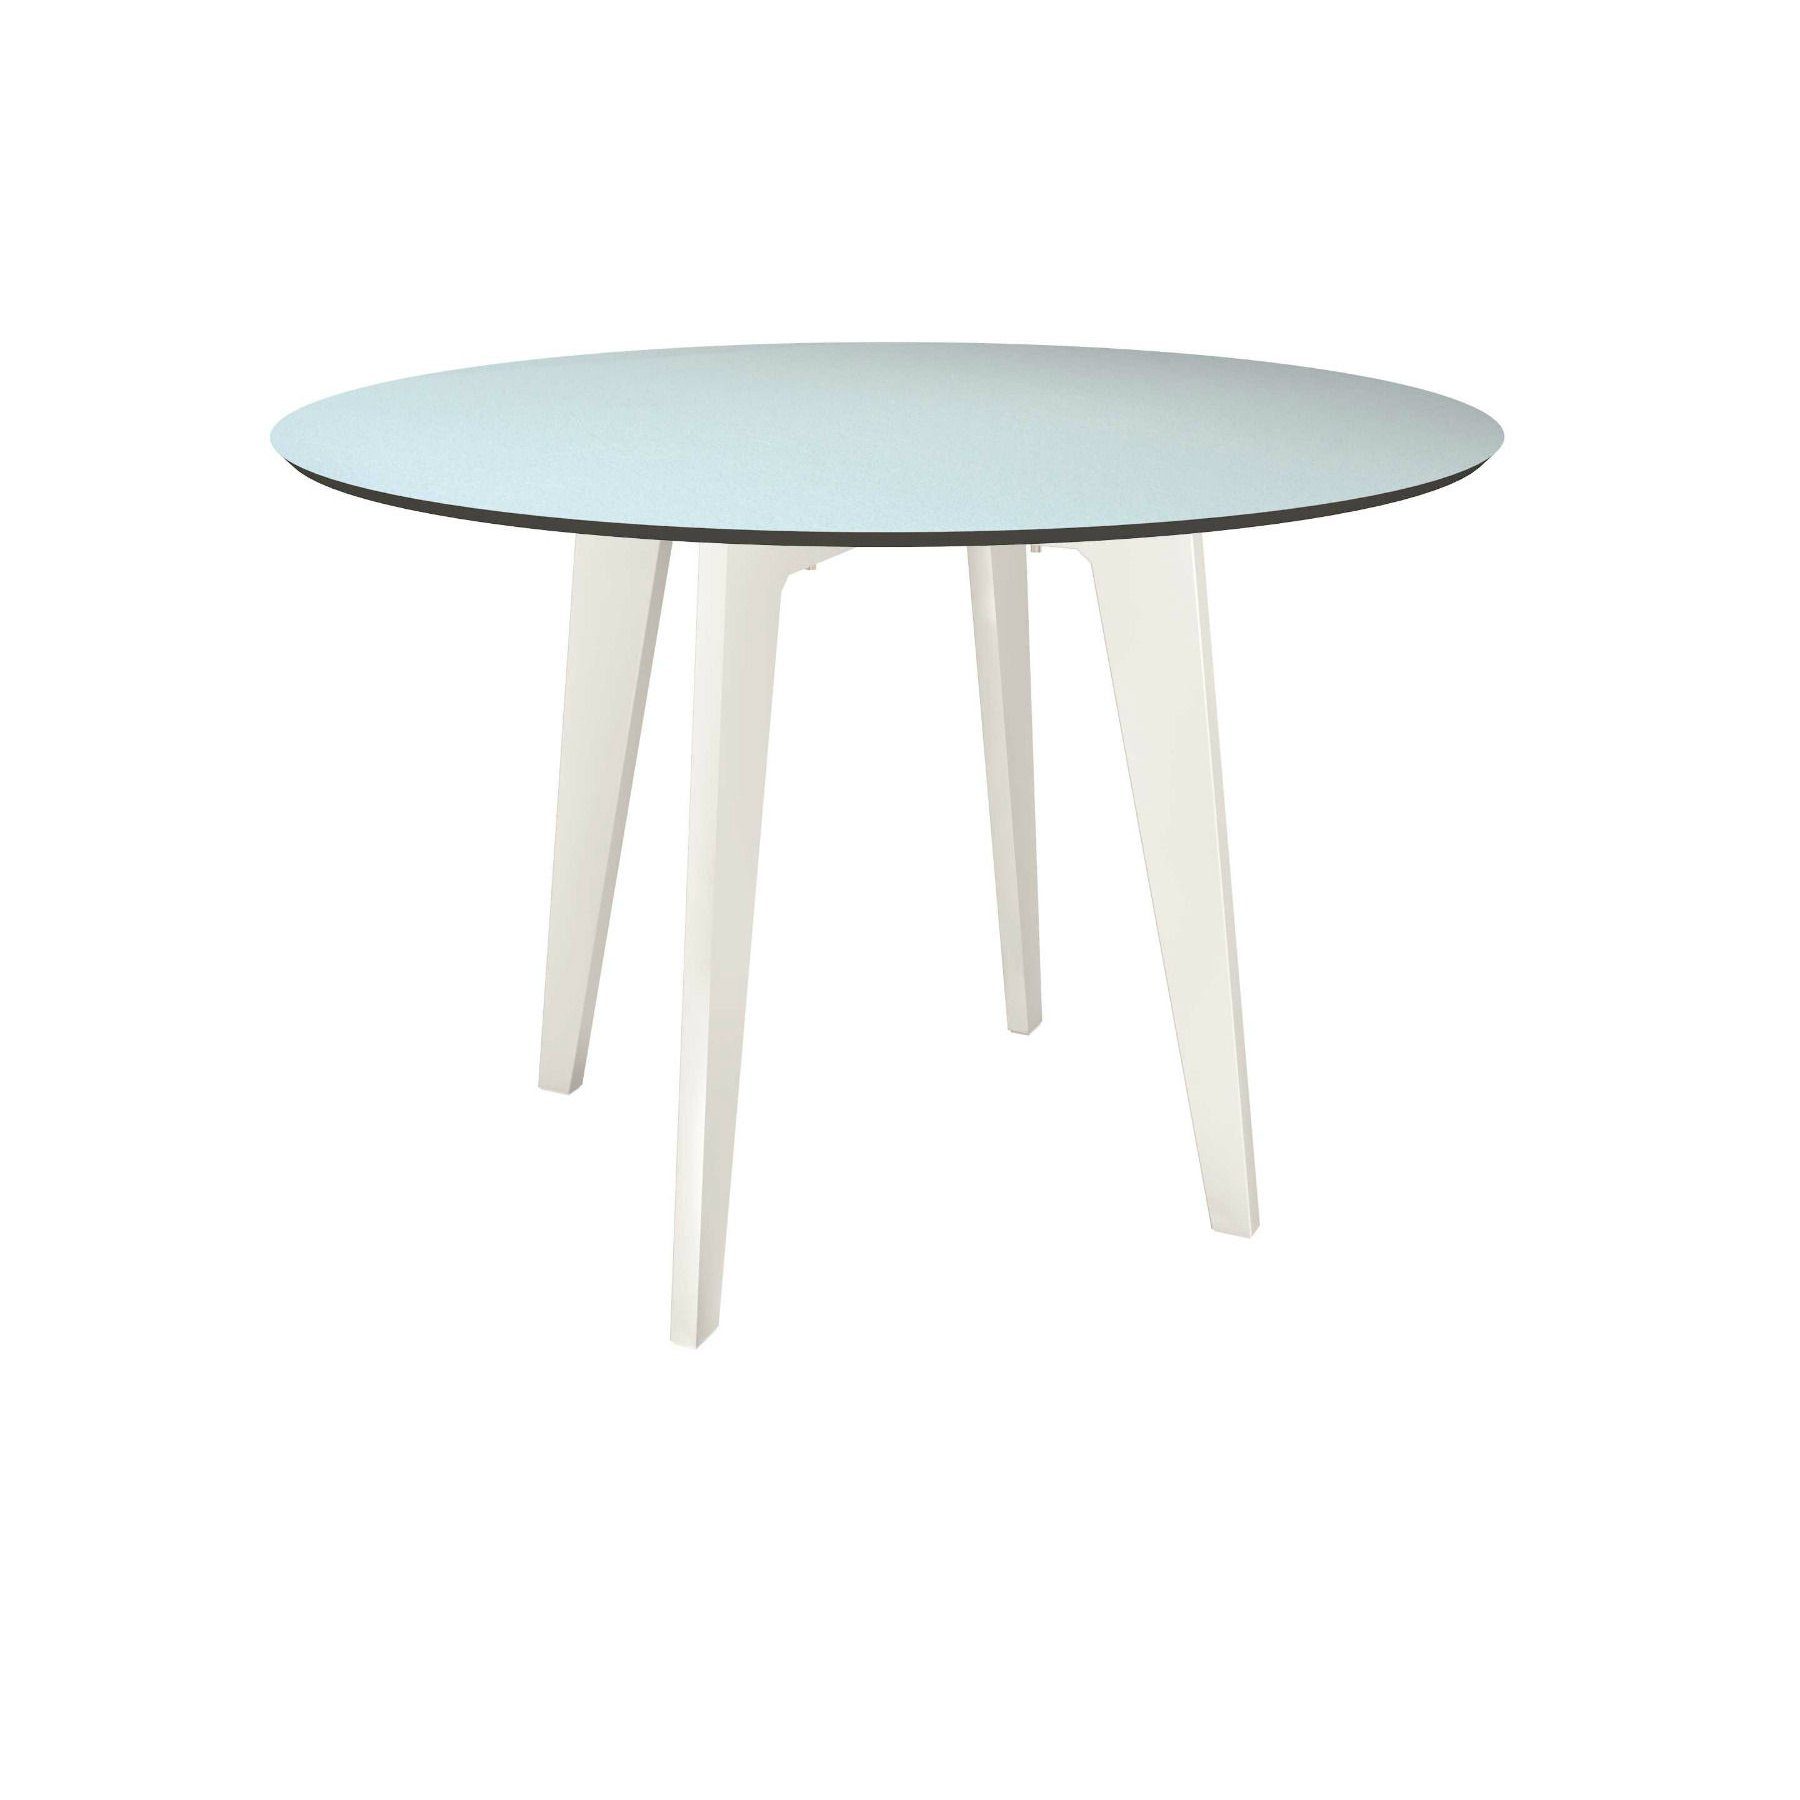 Stern Gartentisch rund 110cm, Aluminium weiß, Tischplatte HPL nordic green